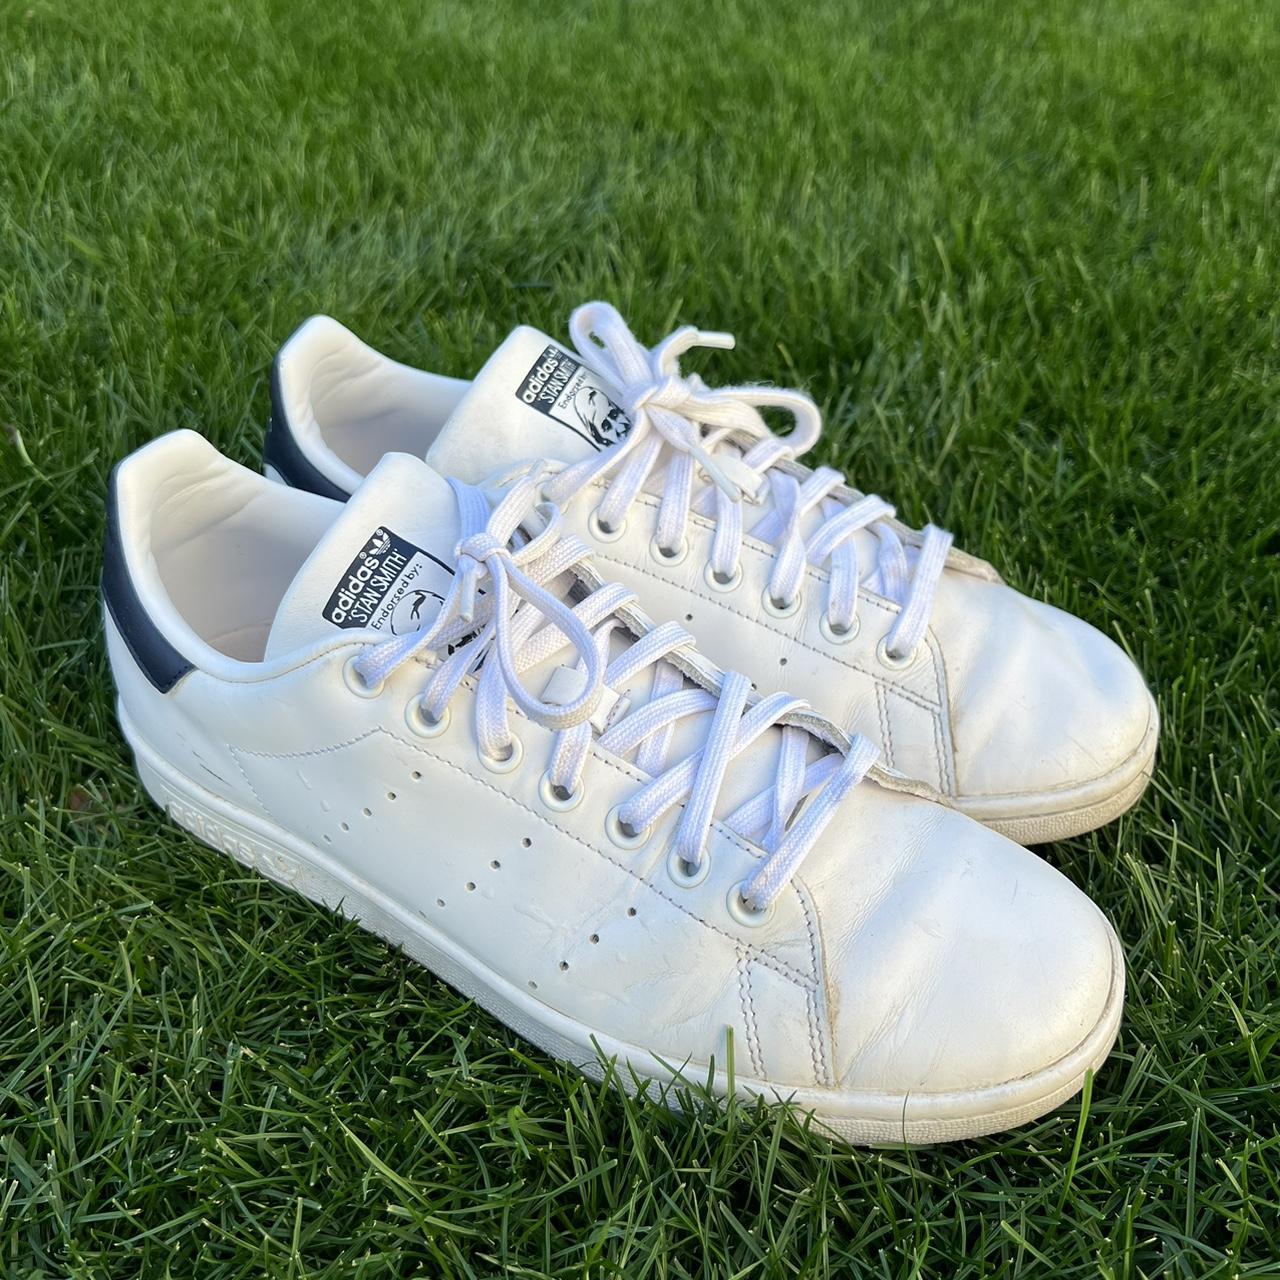 Adidas Stan Smith Shoes Size 9W - Depop